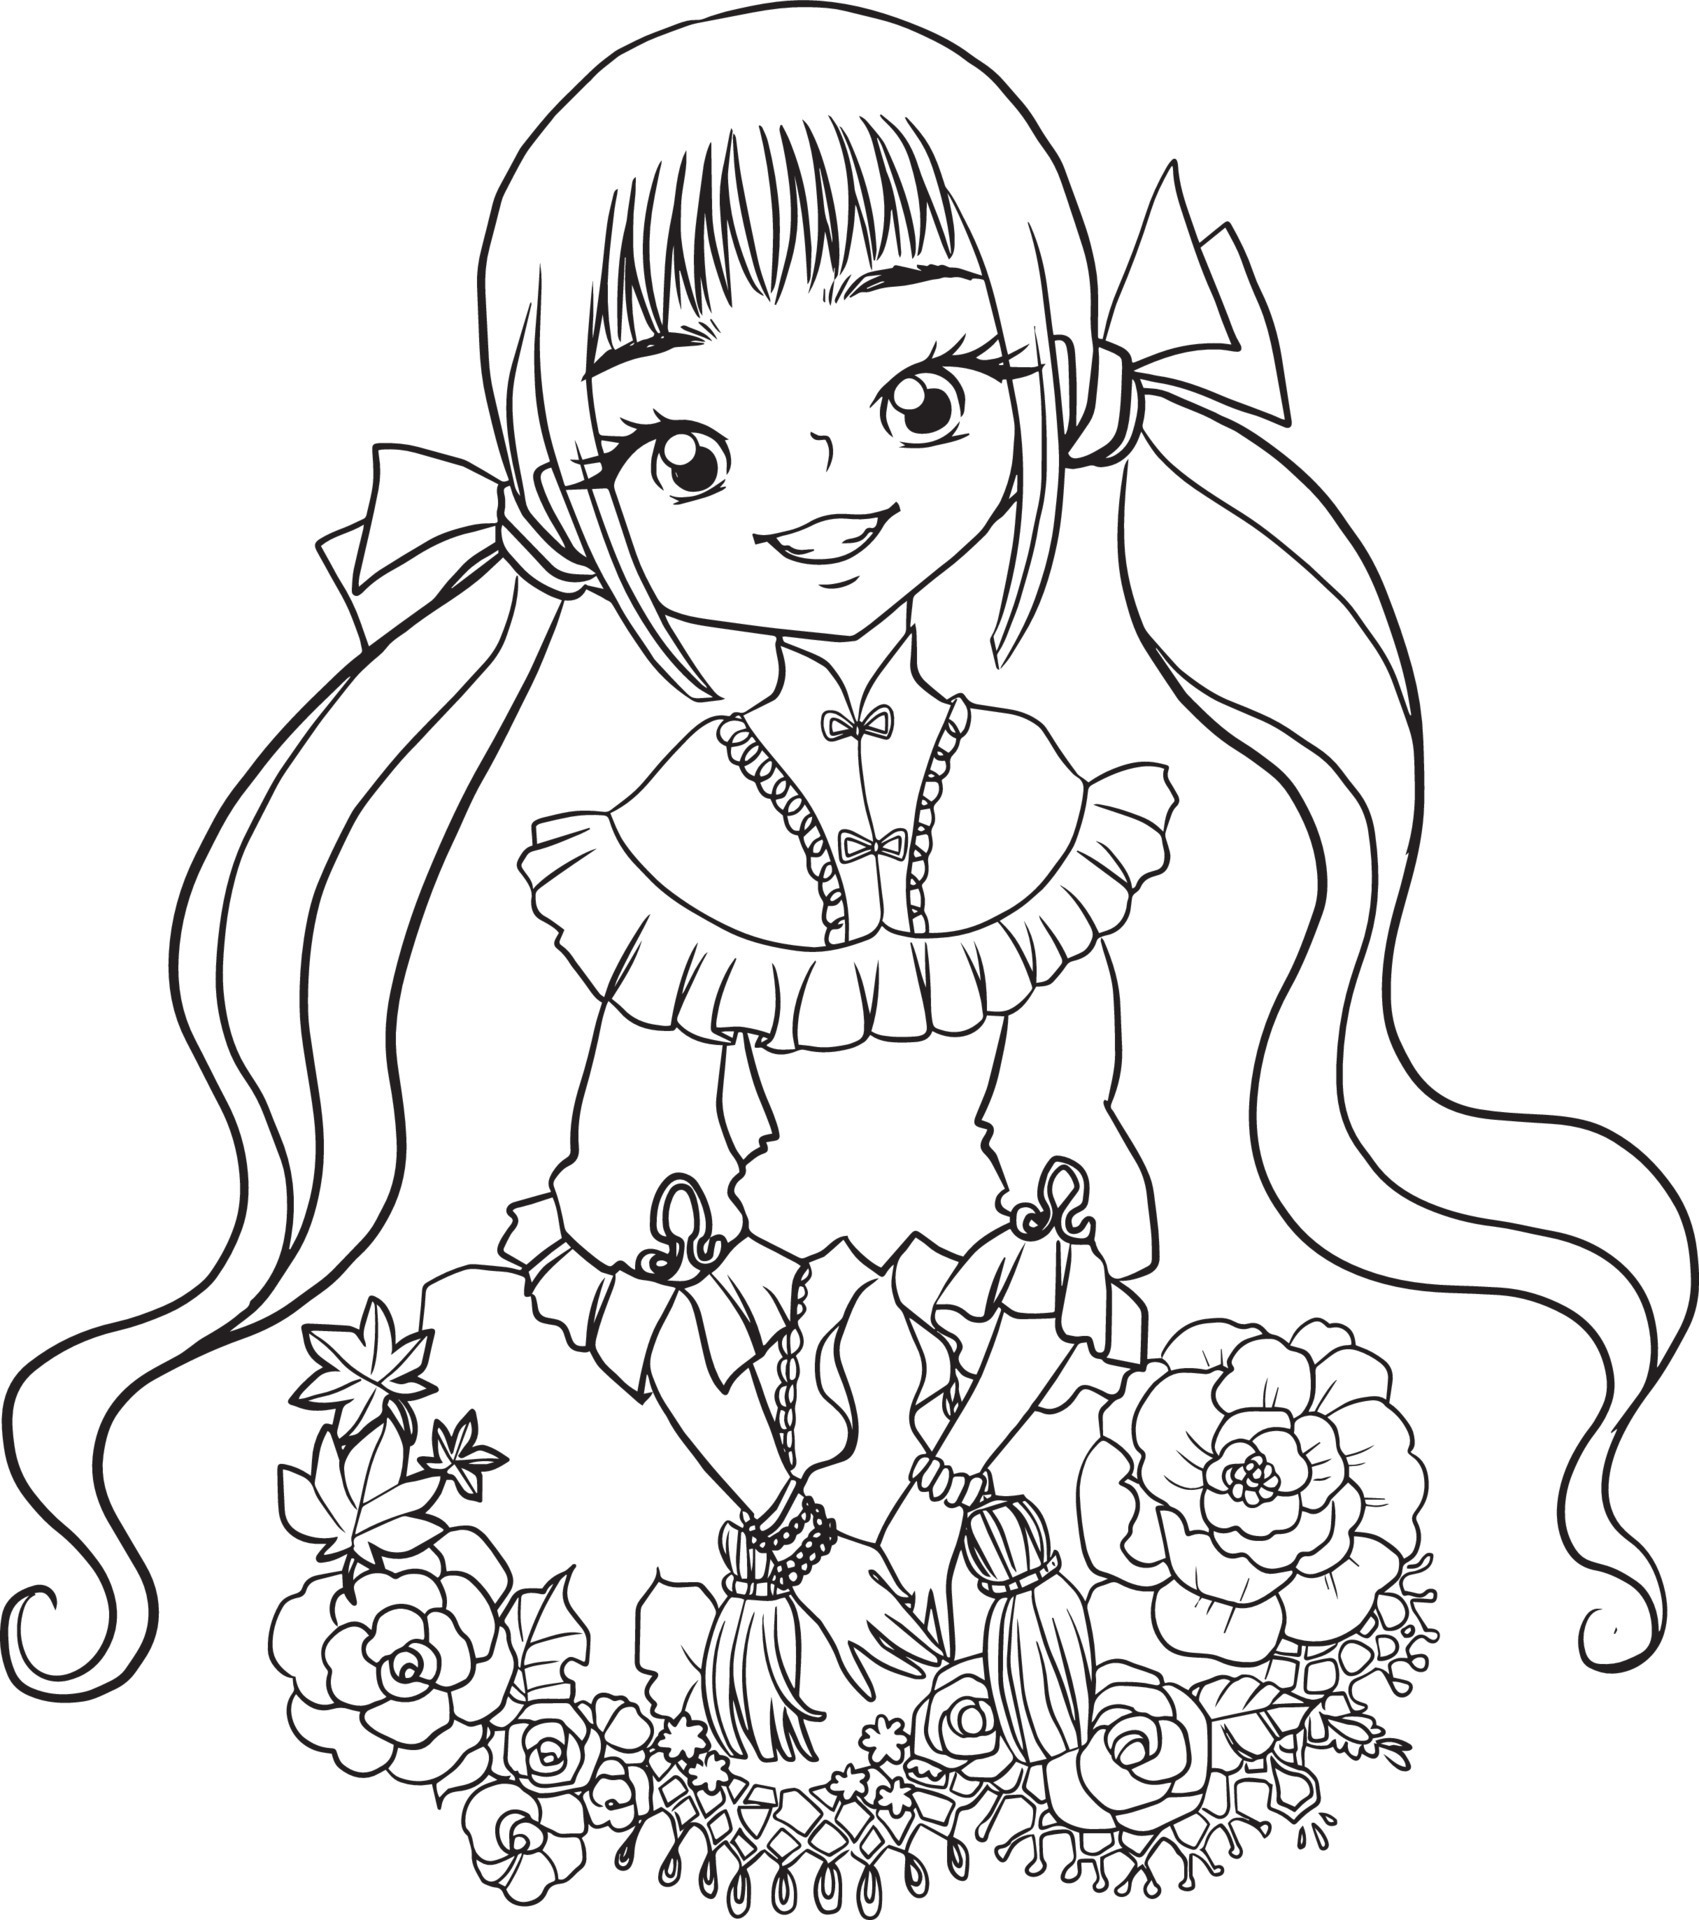 página para colorir menina kawaii anime bonito ilustração dos